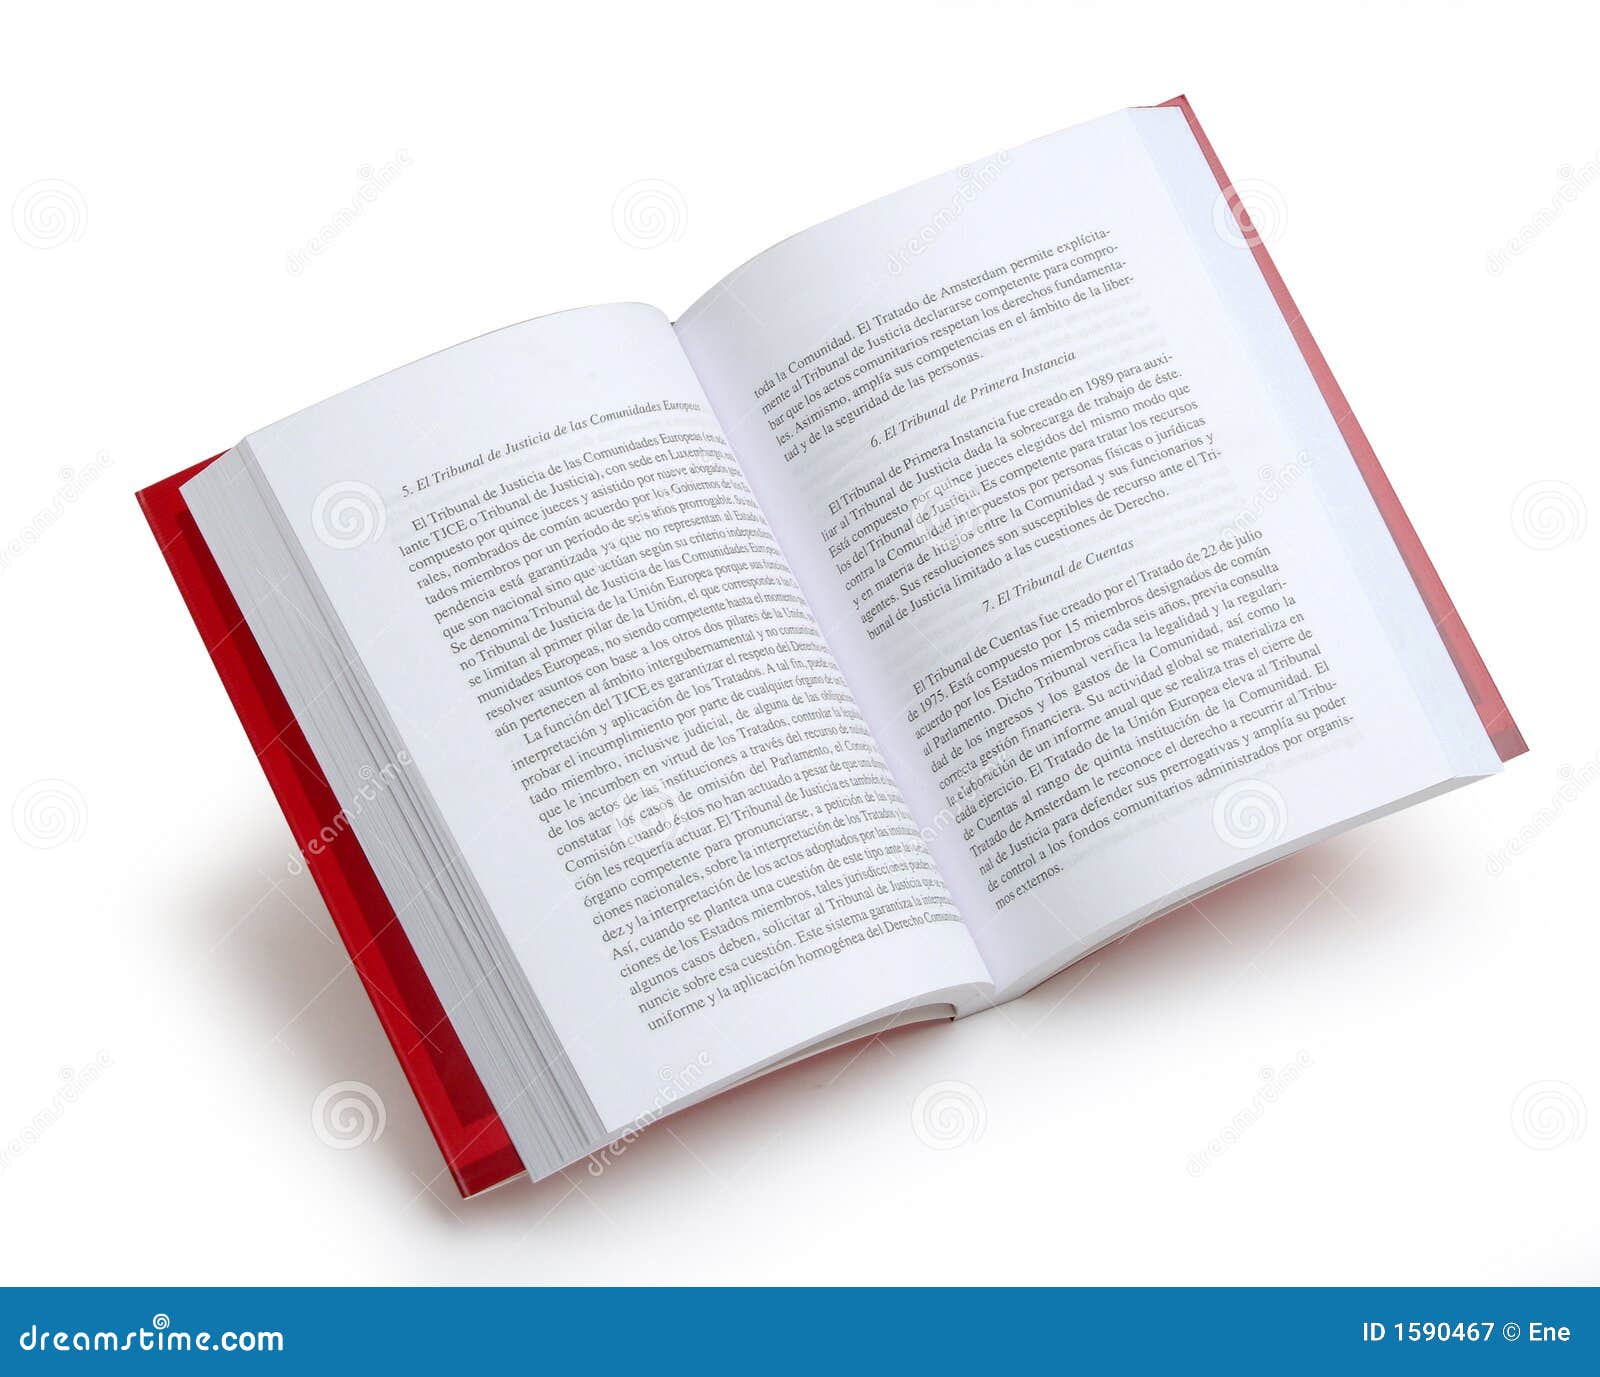 ebook the infrastructure finance handbook principles practice and